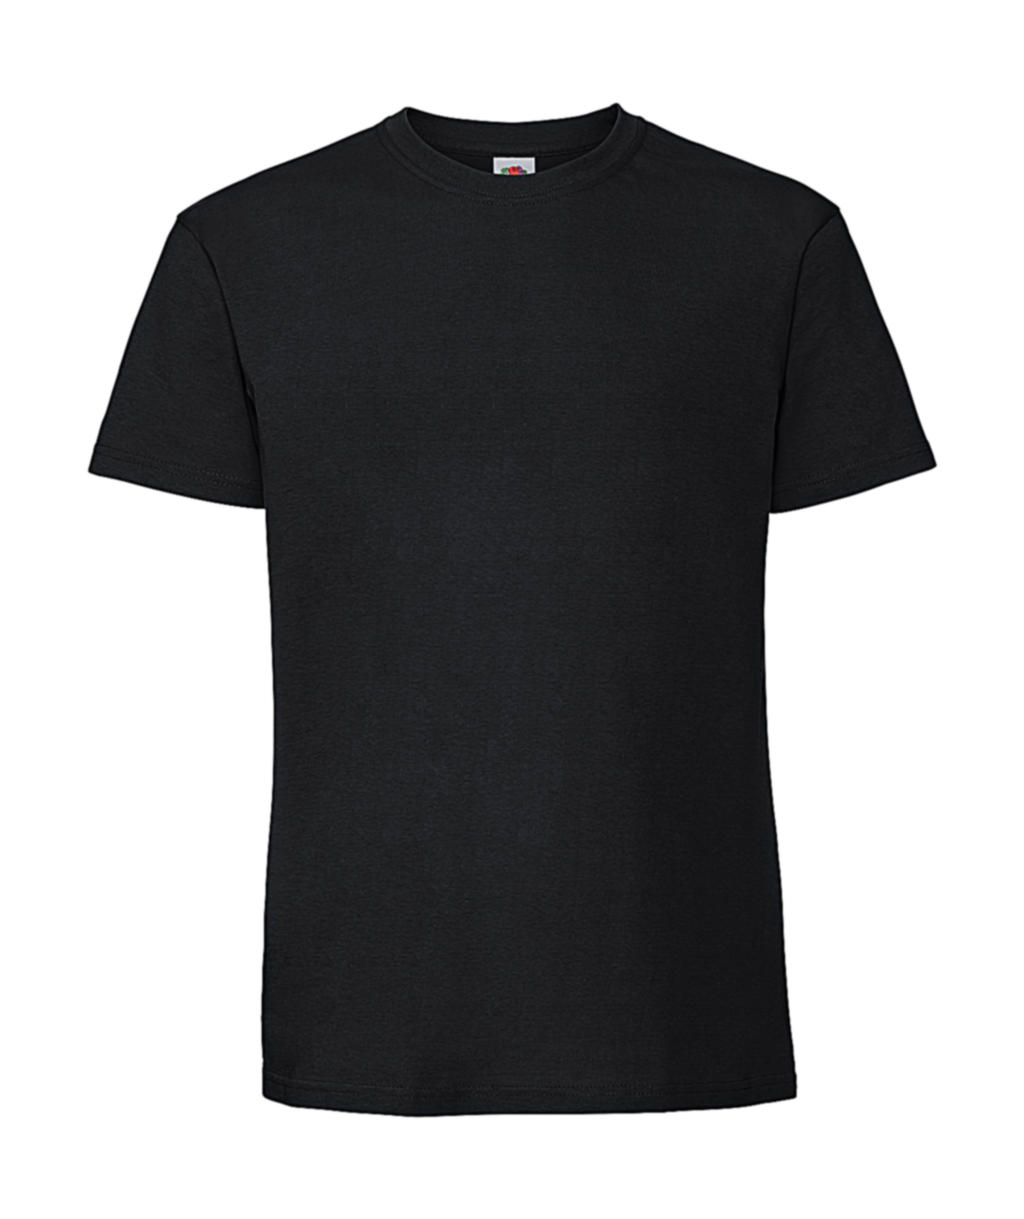 Tričko z prstencovej bavlny Iconic 195 Premium - black